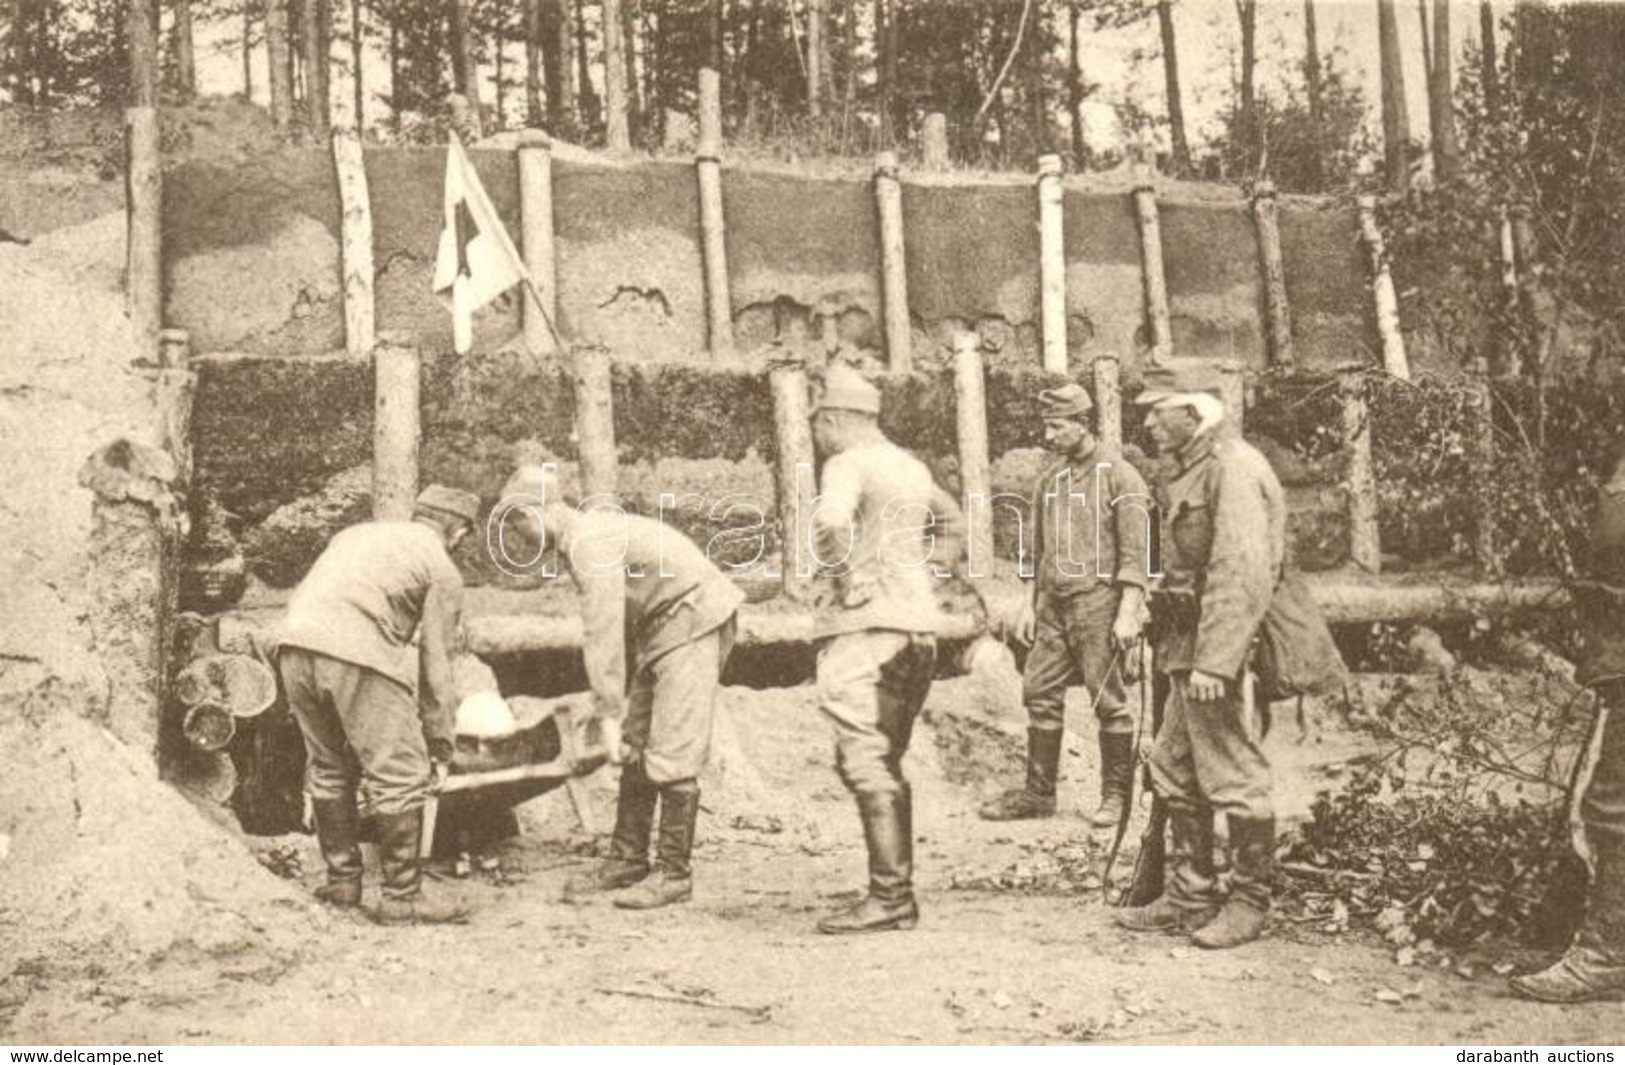 ** T1 1916 Ezredsegélyhely Nowoi Swietnél / Regimentshilfsplatz Bei Nowoi Swiet / WWI K.u.k. Military Regiment's First A - Sin Clasificación